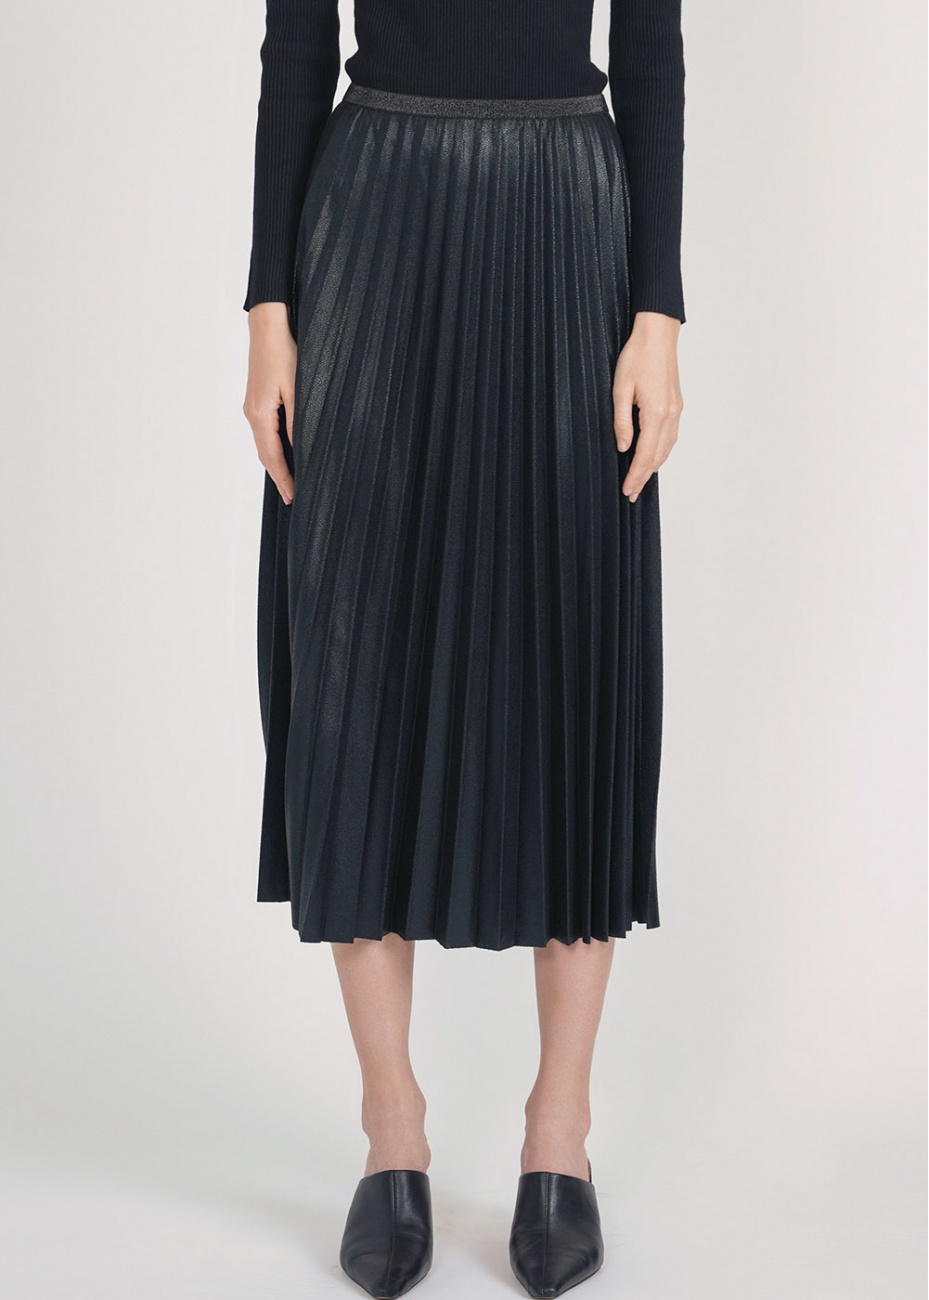 Subtle Shine Black Pleated Midi Skirt